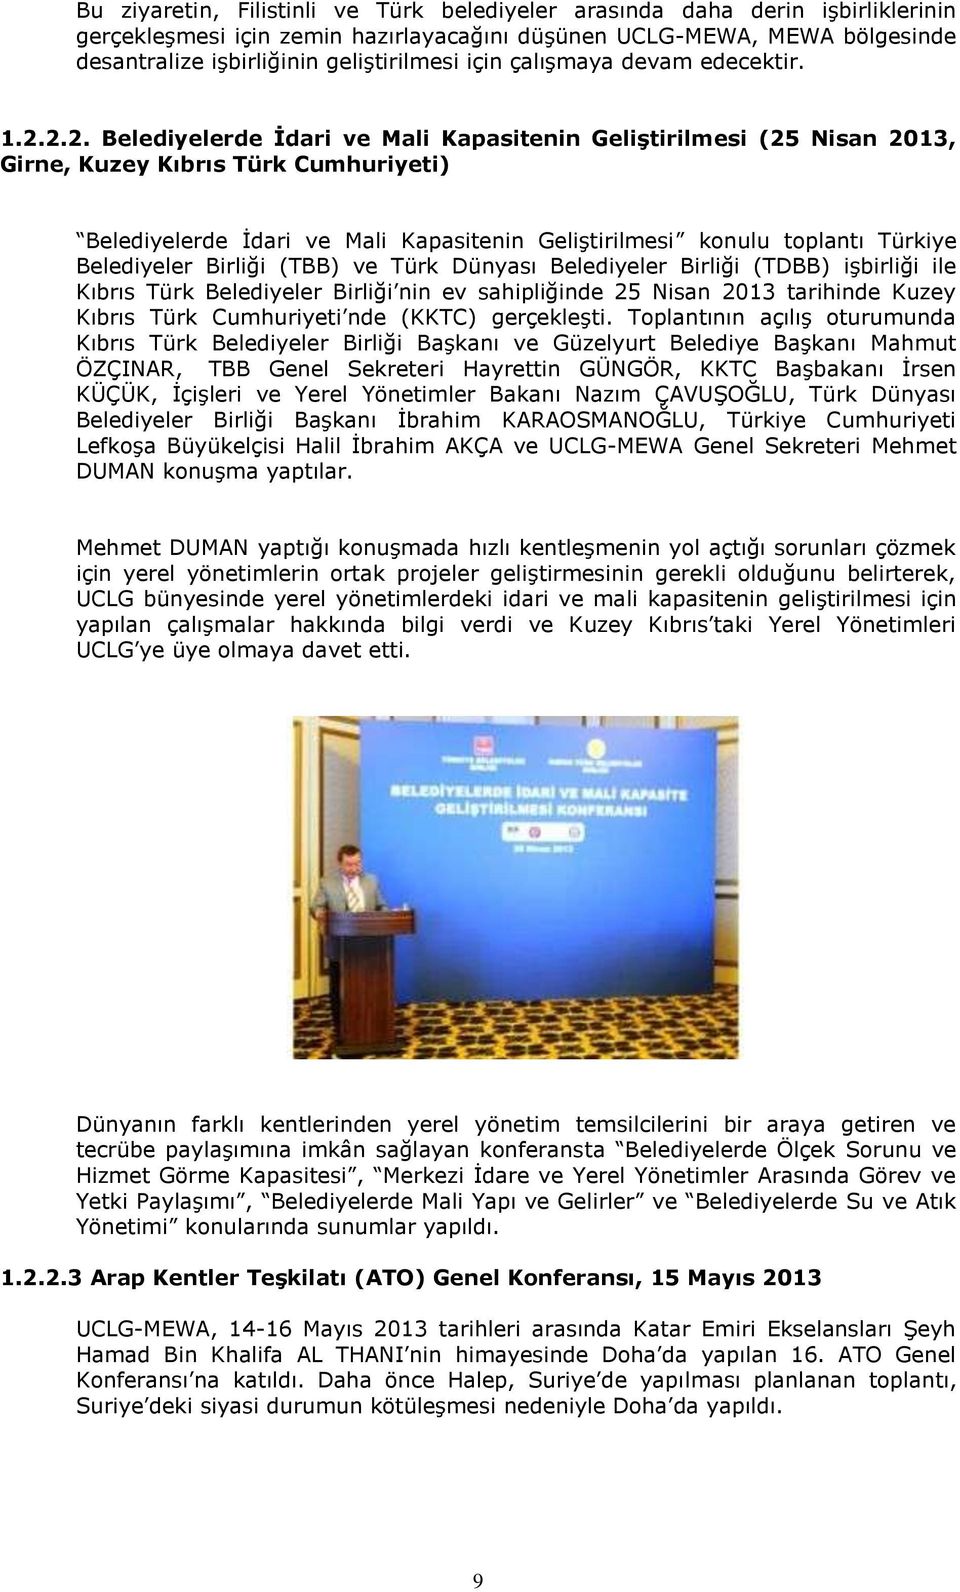 2.2. Belediyelerde İdari ve Mali Kapasitenin Geliştirilmesi (25 Nisan 2013, Girne, Kuzey Kıbrıs Türk Cumhuriyeti) Belediyelerde İdari ve Mali Kapasitenin Geliştirilmesi konulu toplantı Türkiye